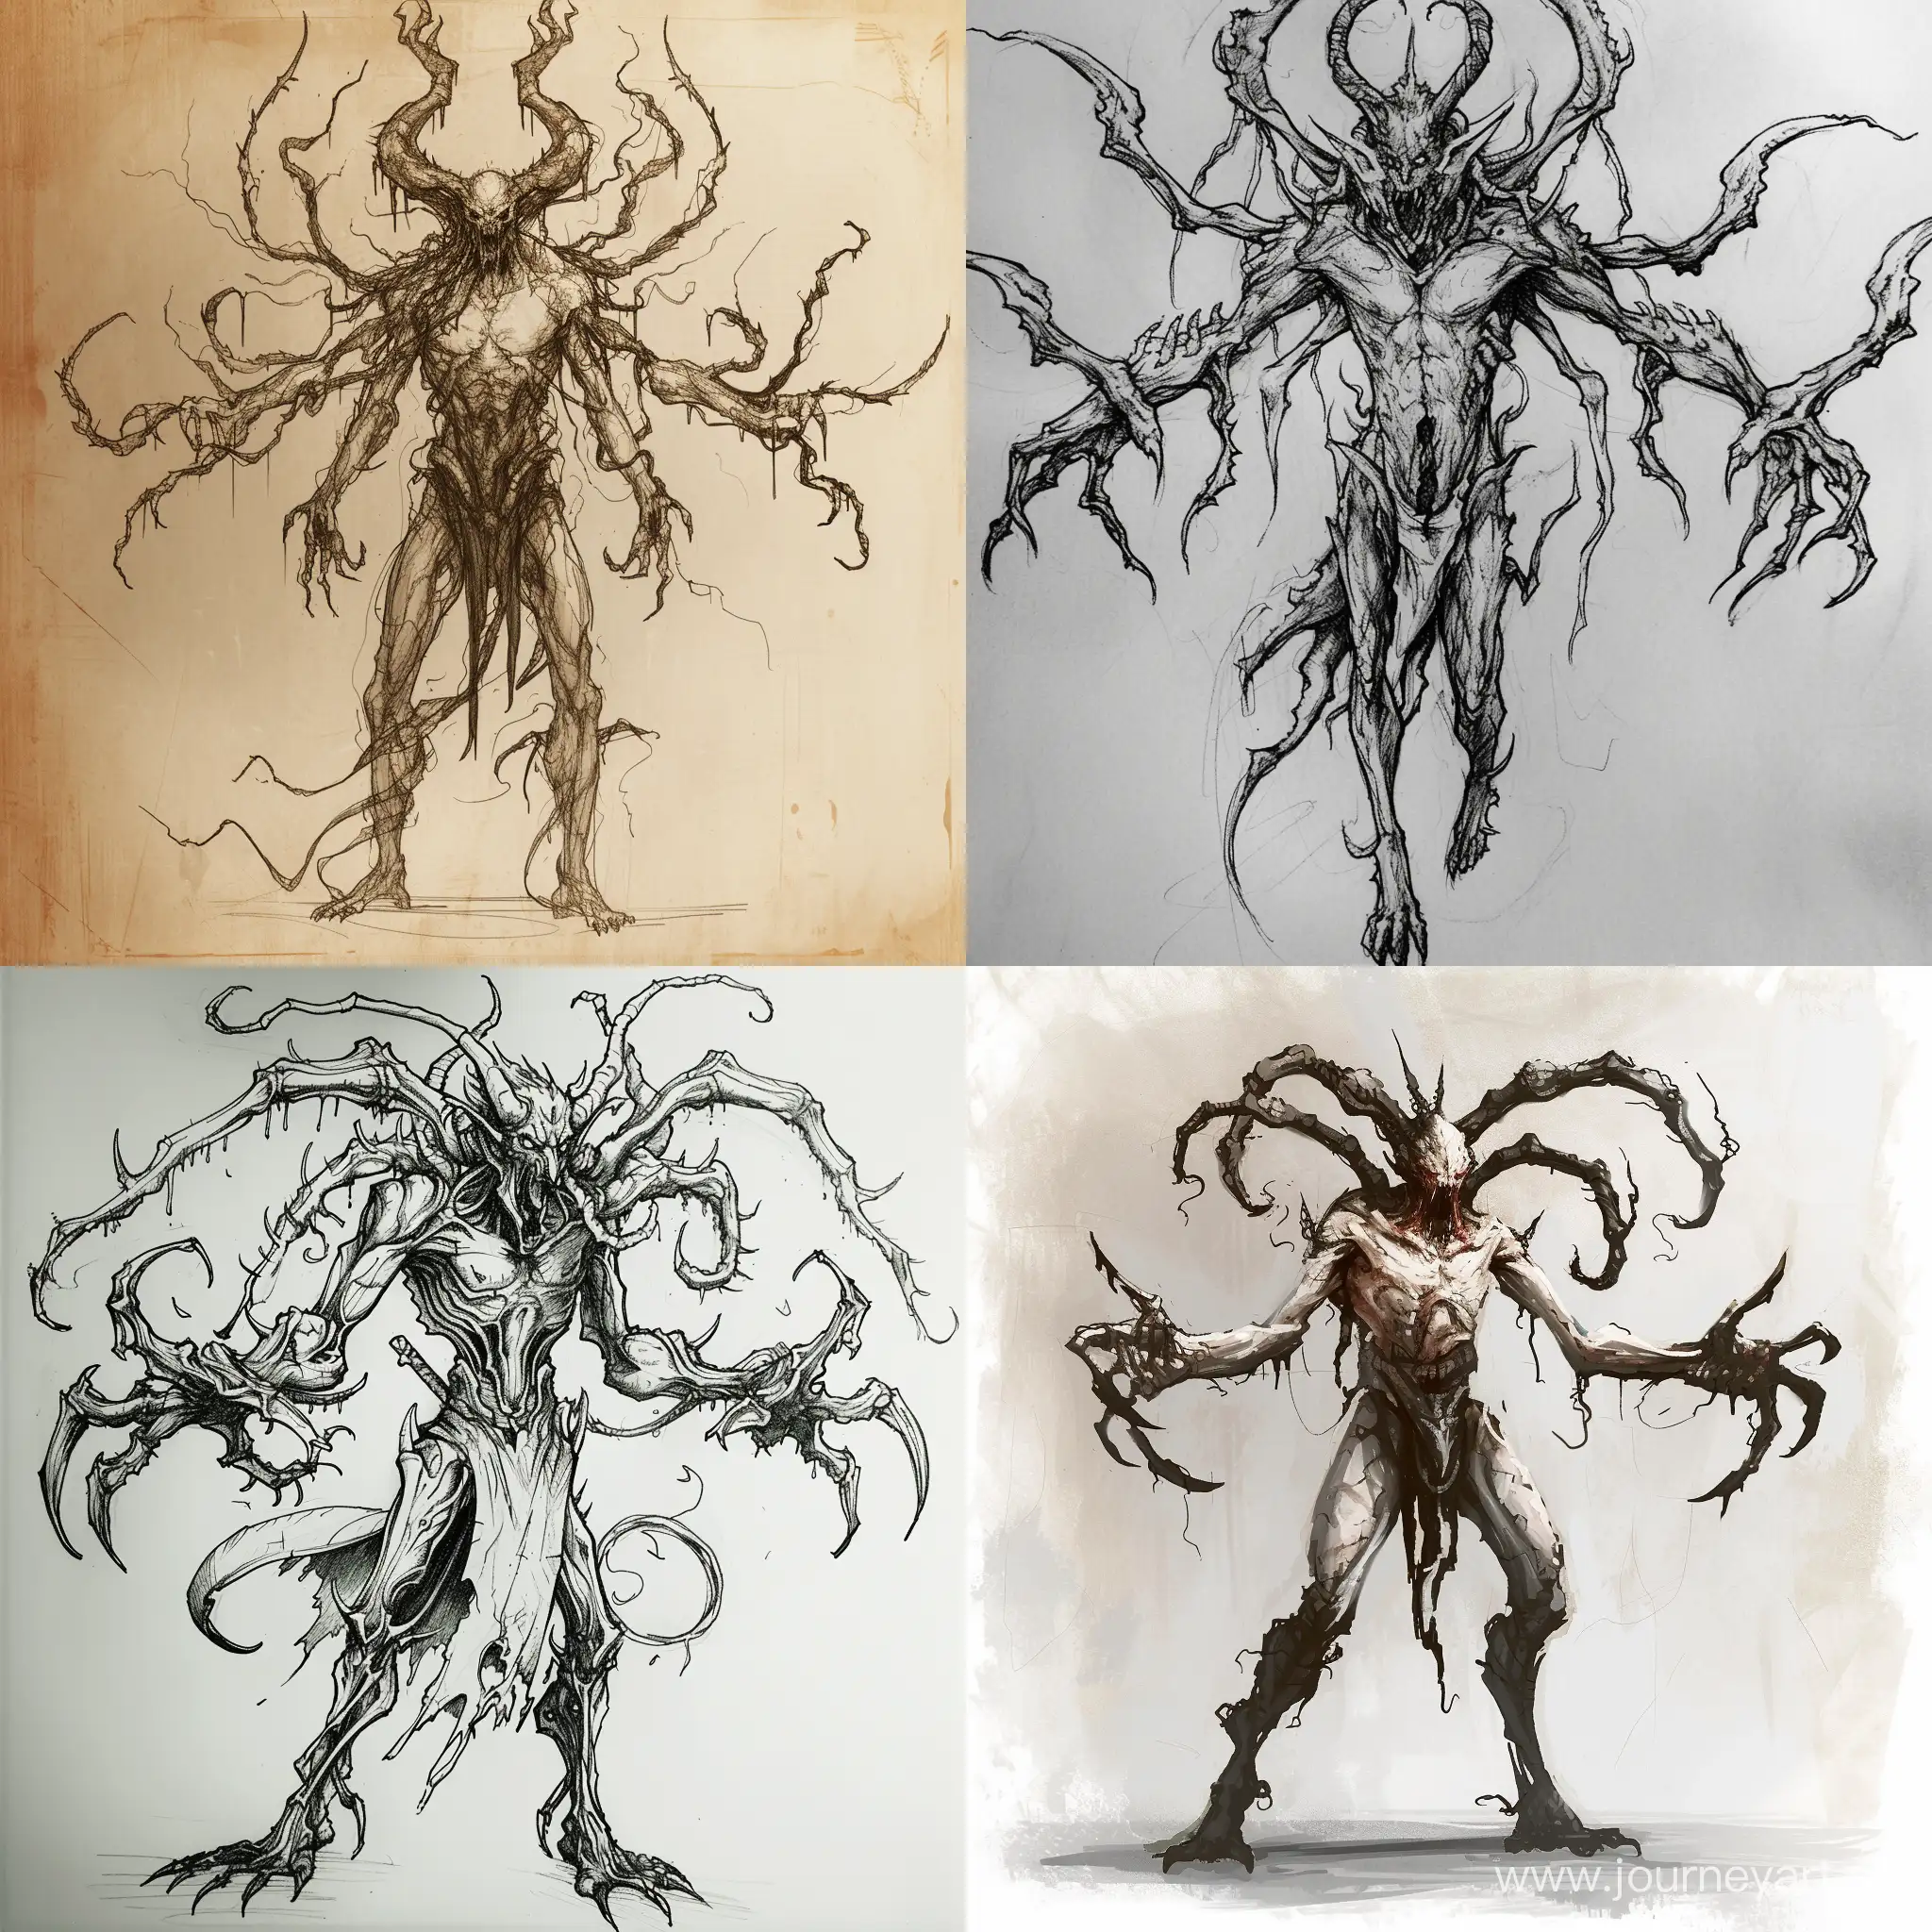 Нарисуй демона, в стиле реализм, для игры, у демона должно быть много рук, он должен быть ростом порядка 4 метров в высоту
